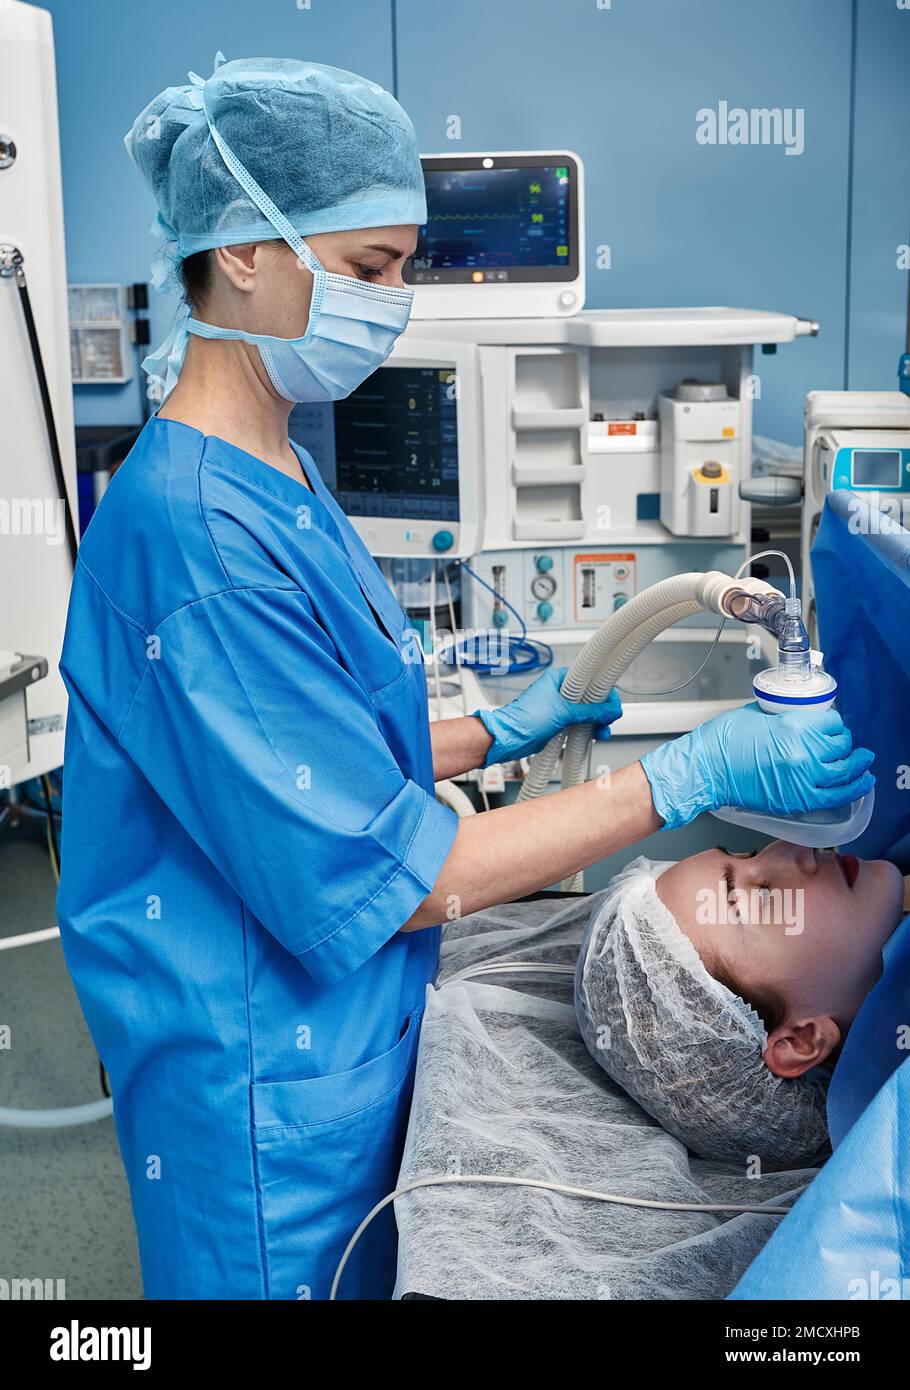 Infirmier chirurgical en gants stériles en plaçant le masque d'anesthésie sur la patiente pendant l'opération chirurgicale dans la salle d'opération de l'hôpital Banque D'Images